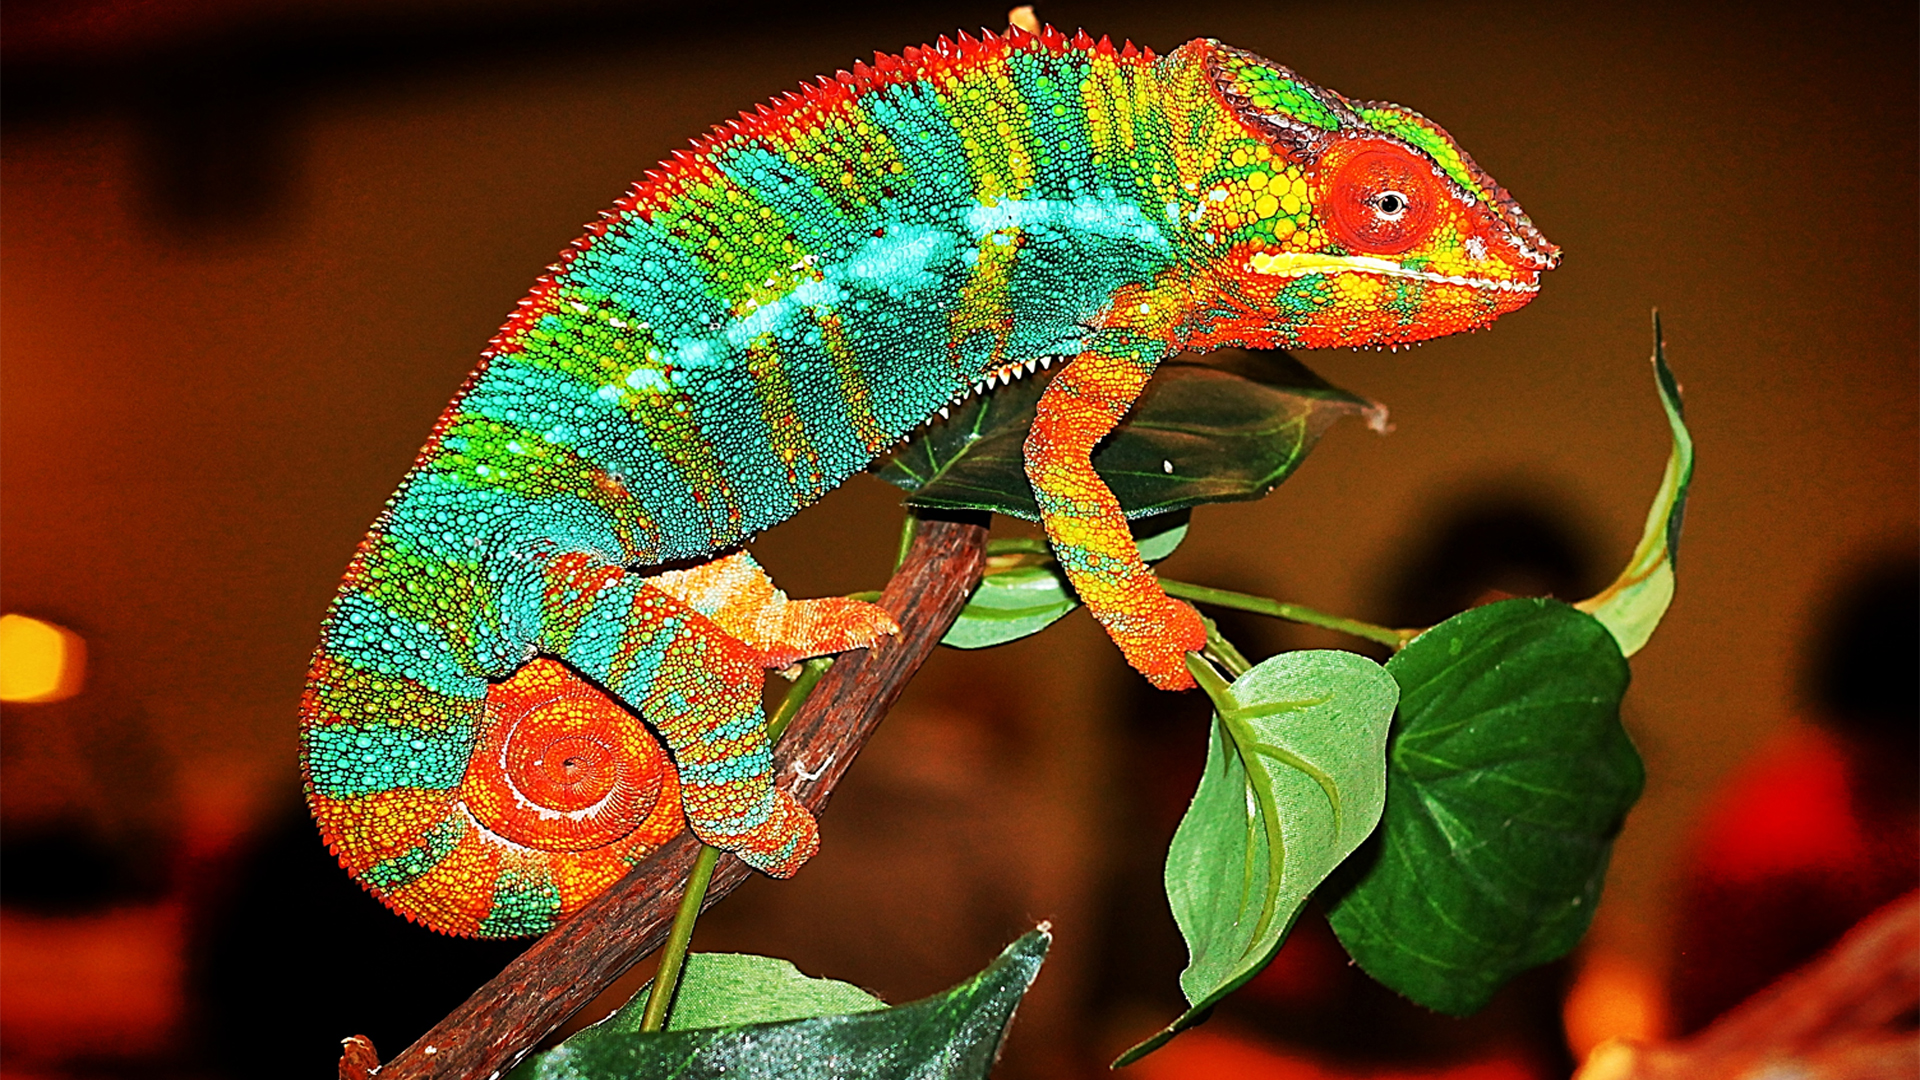 Chameleon , HD Wallpaper & Backgrounds